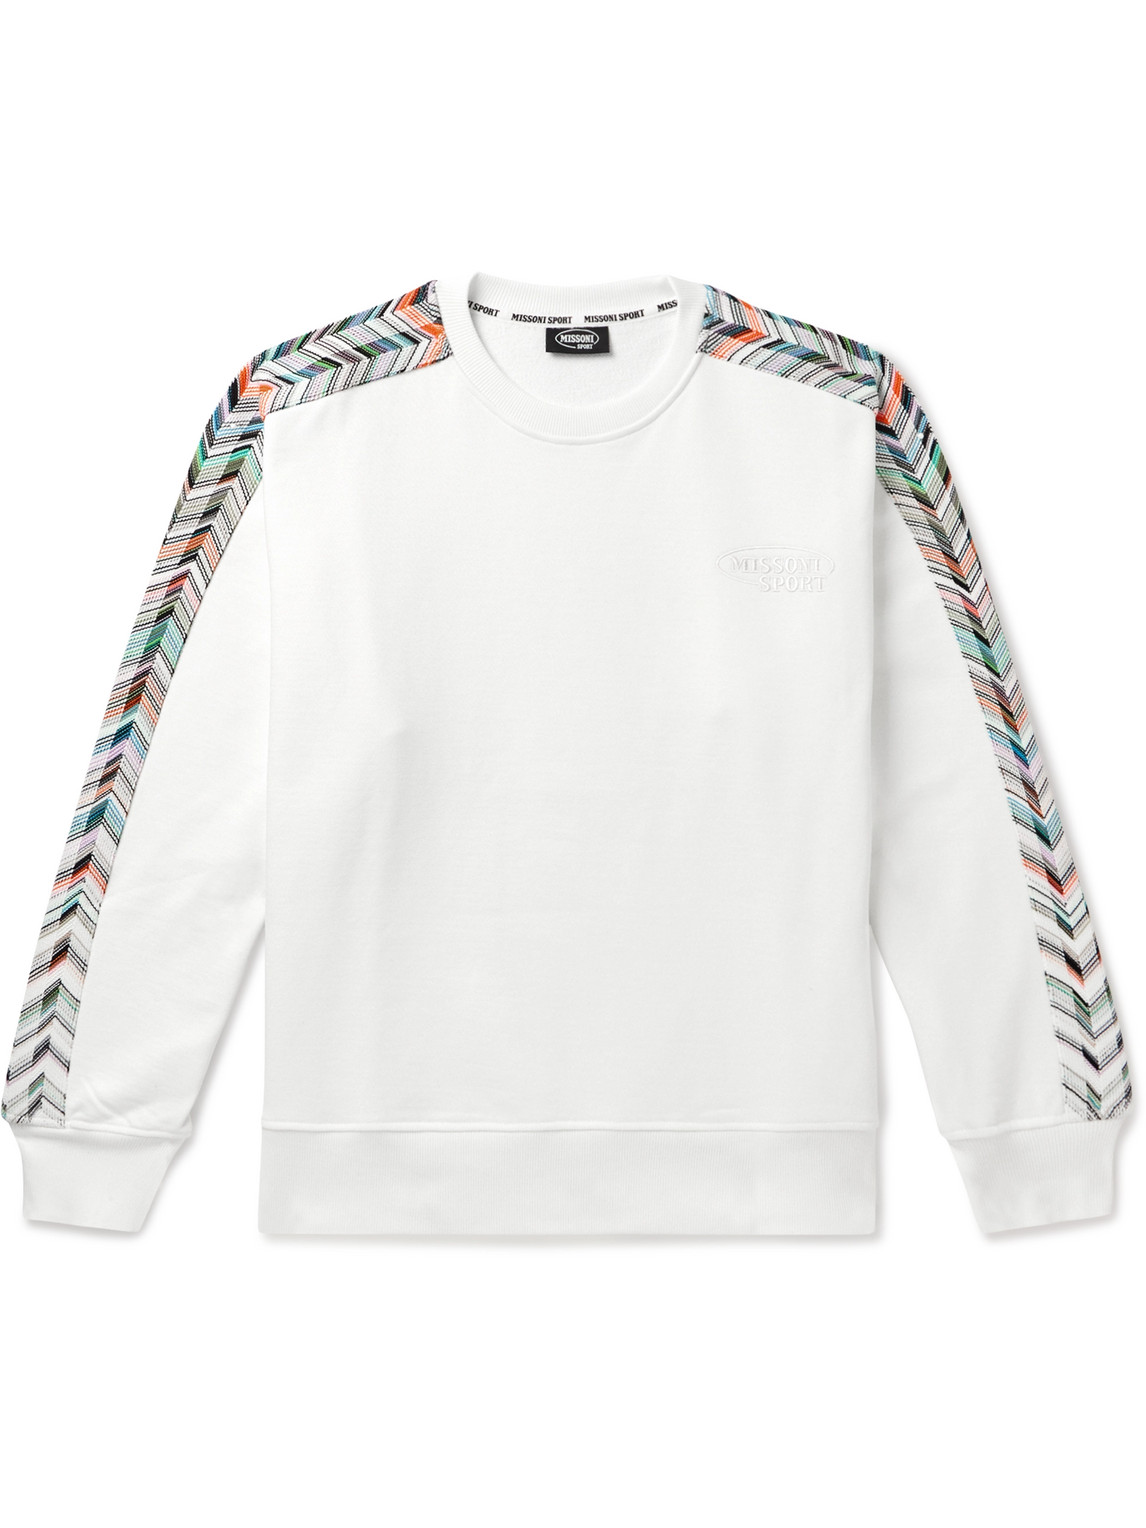 Missoni - Logo-Embroidered Striped Cotton-Jersey Sweatshirt - Men - White - L von Missoni